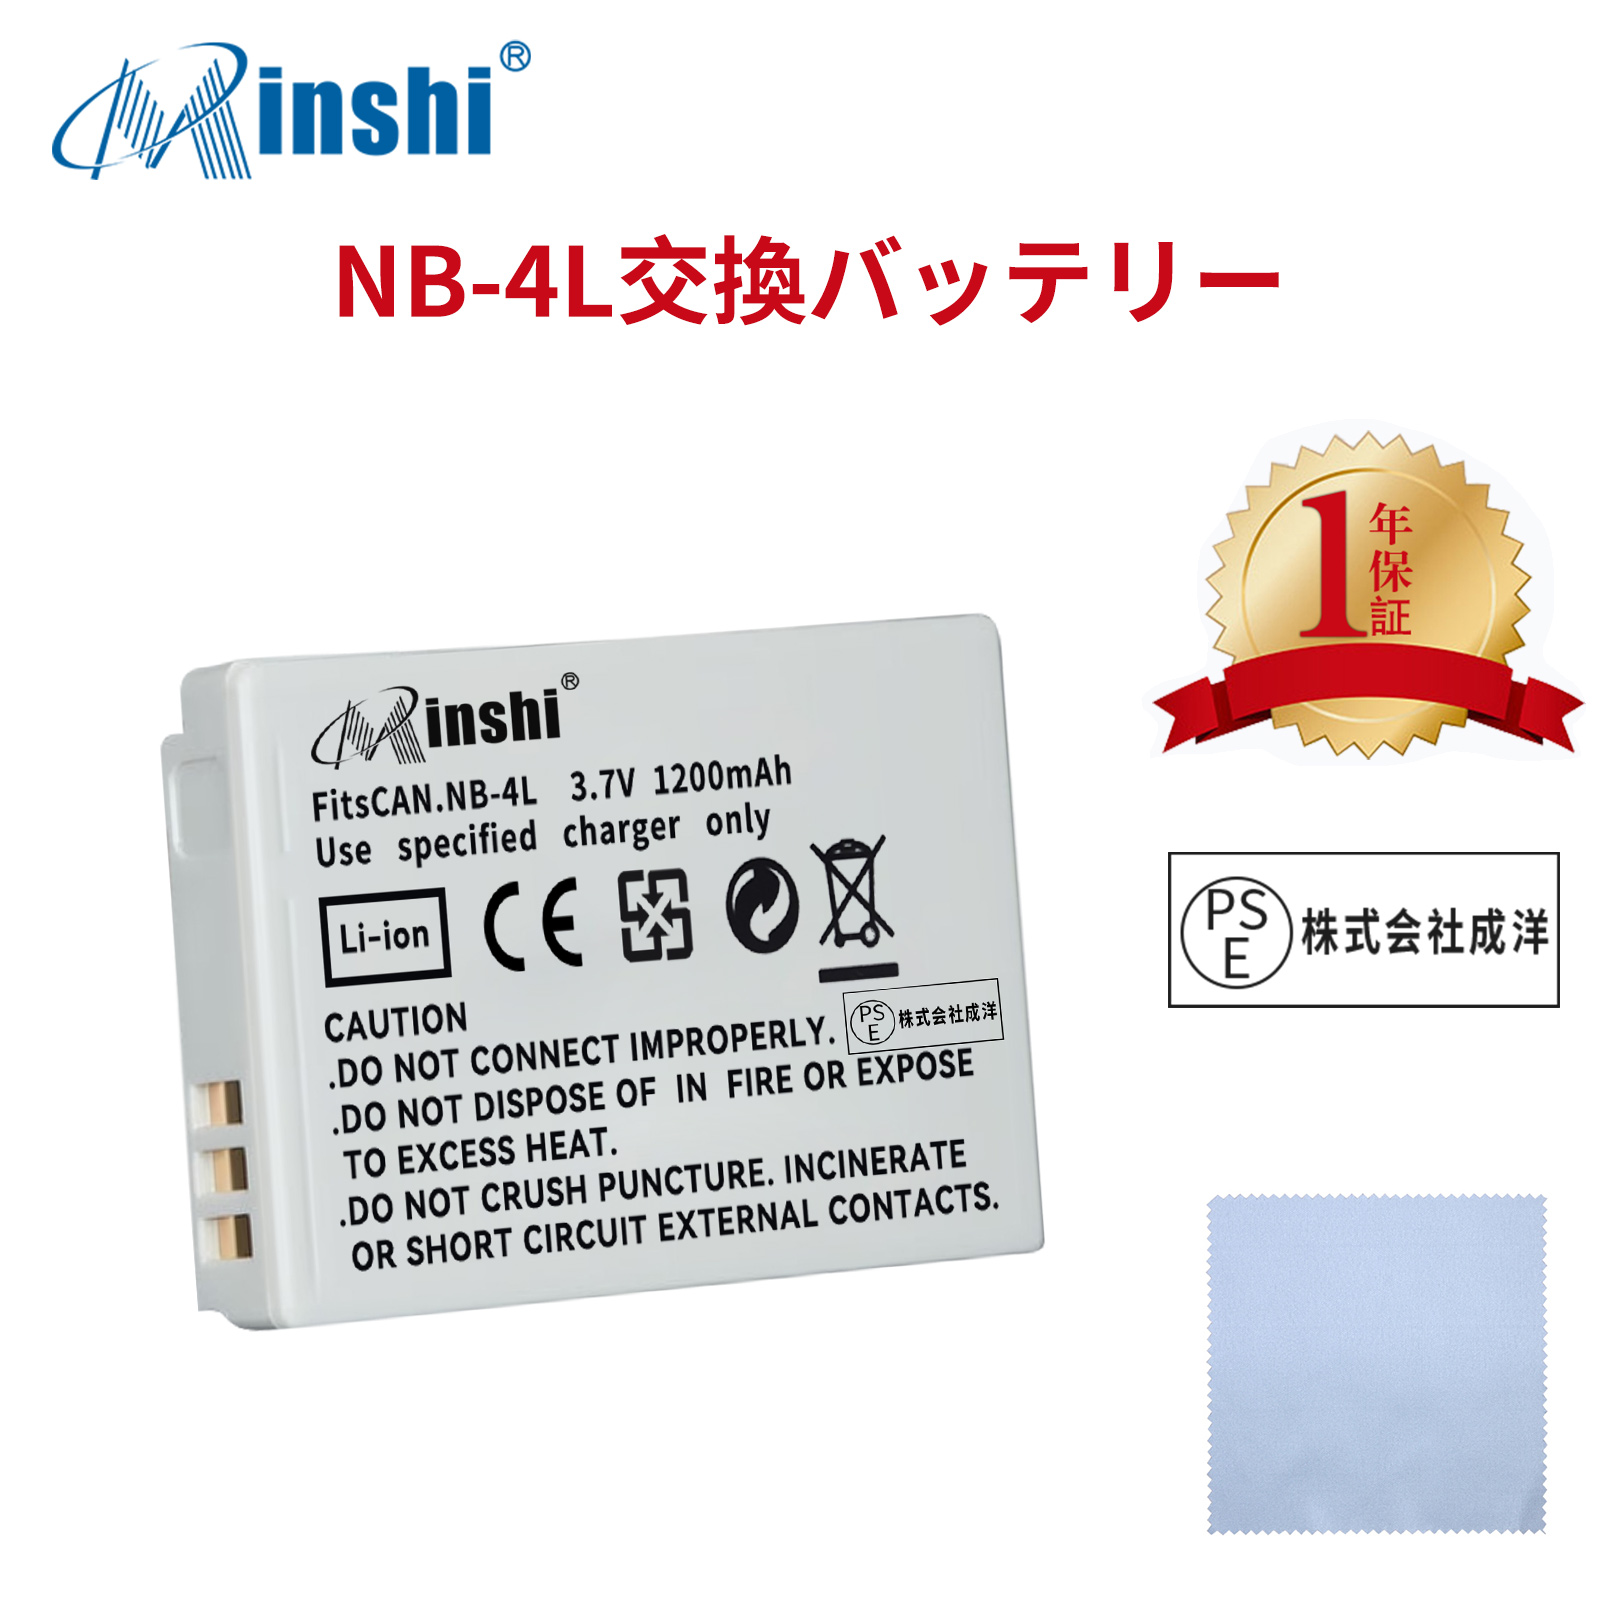 【清潔布ー付】minshi Canon Digital IXUS 110 I 100 IS【3.7V】 高品質交換用バッテリー